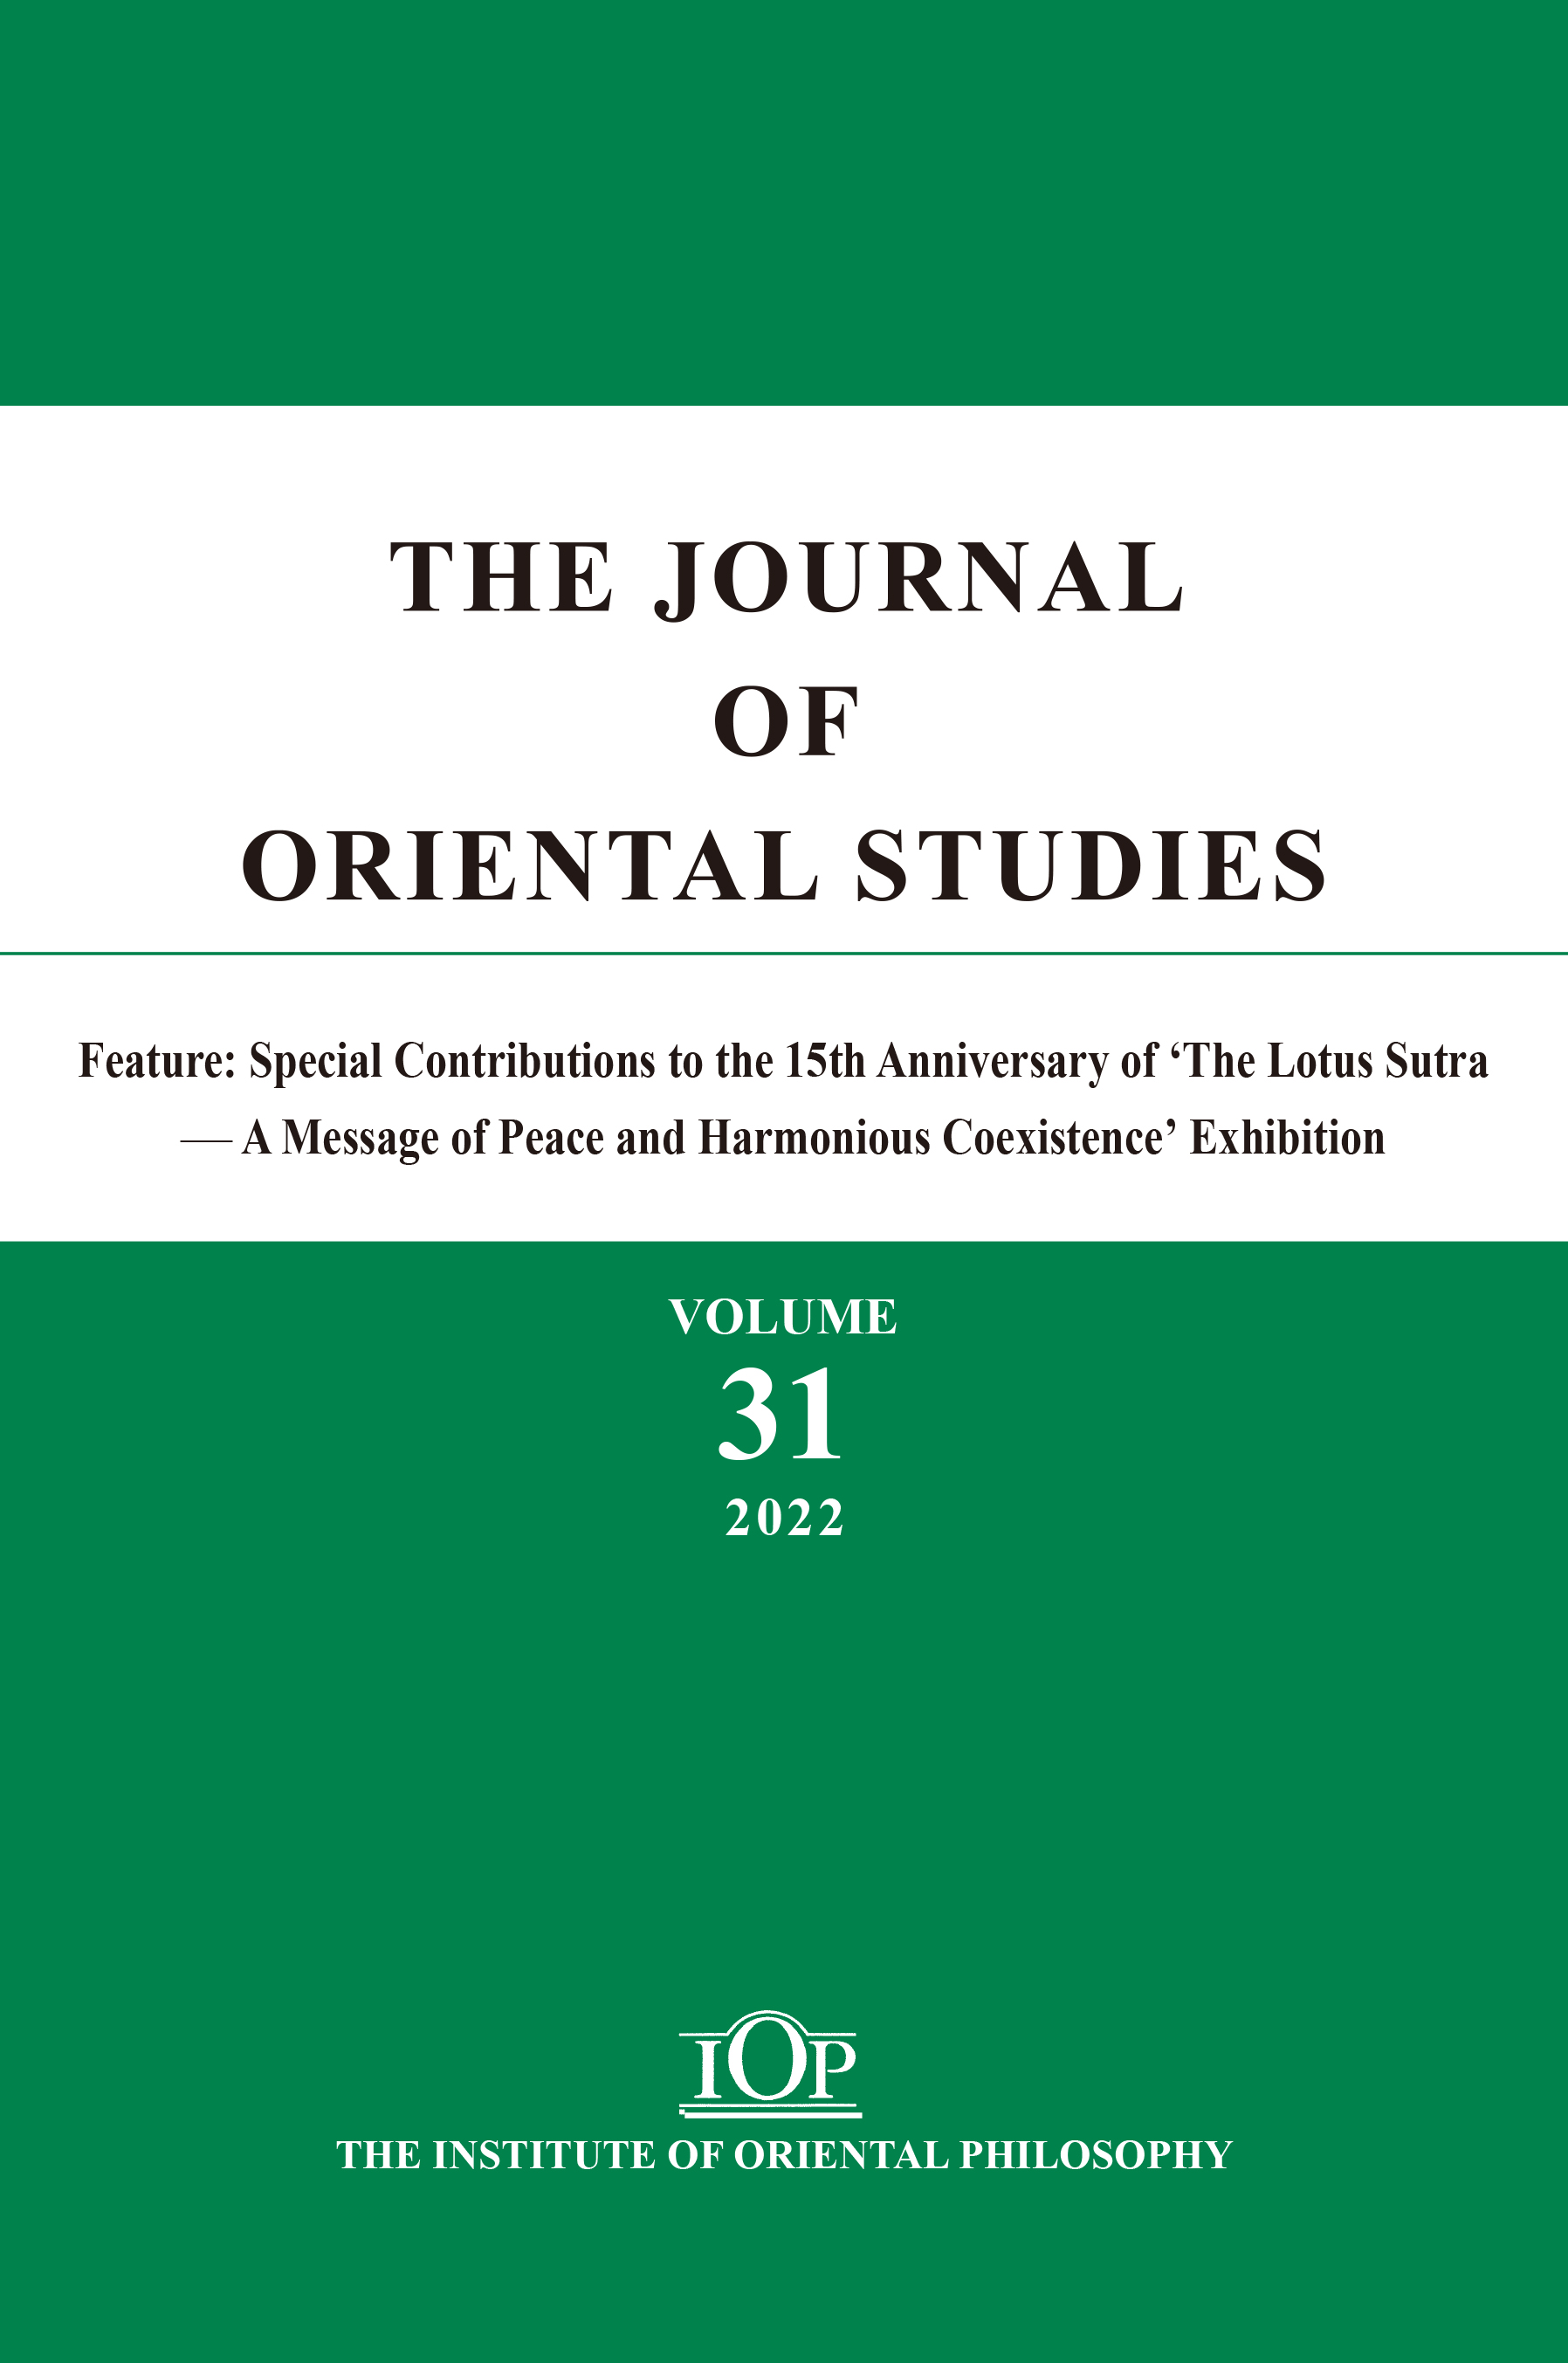 THE JOURNAL OF ORIENTAL STUDIES（Vol. 31）